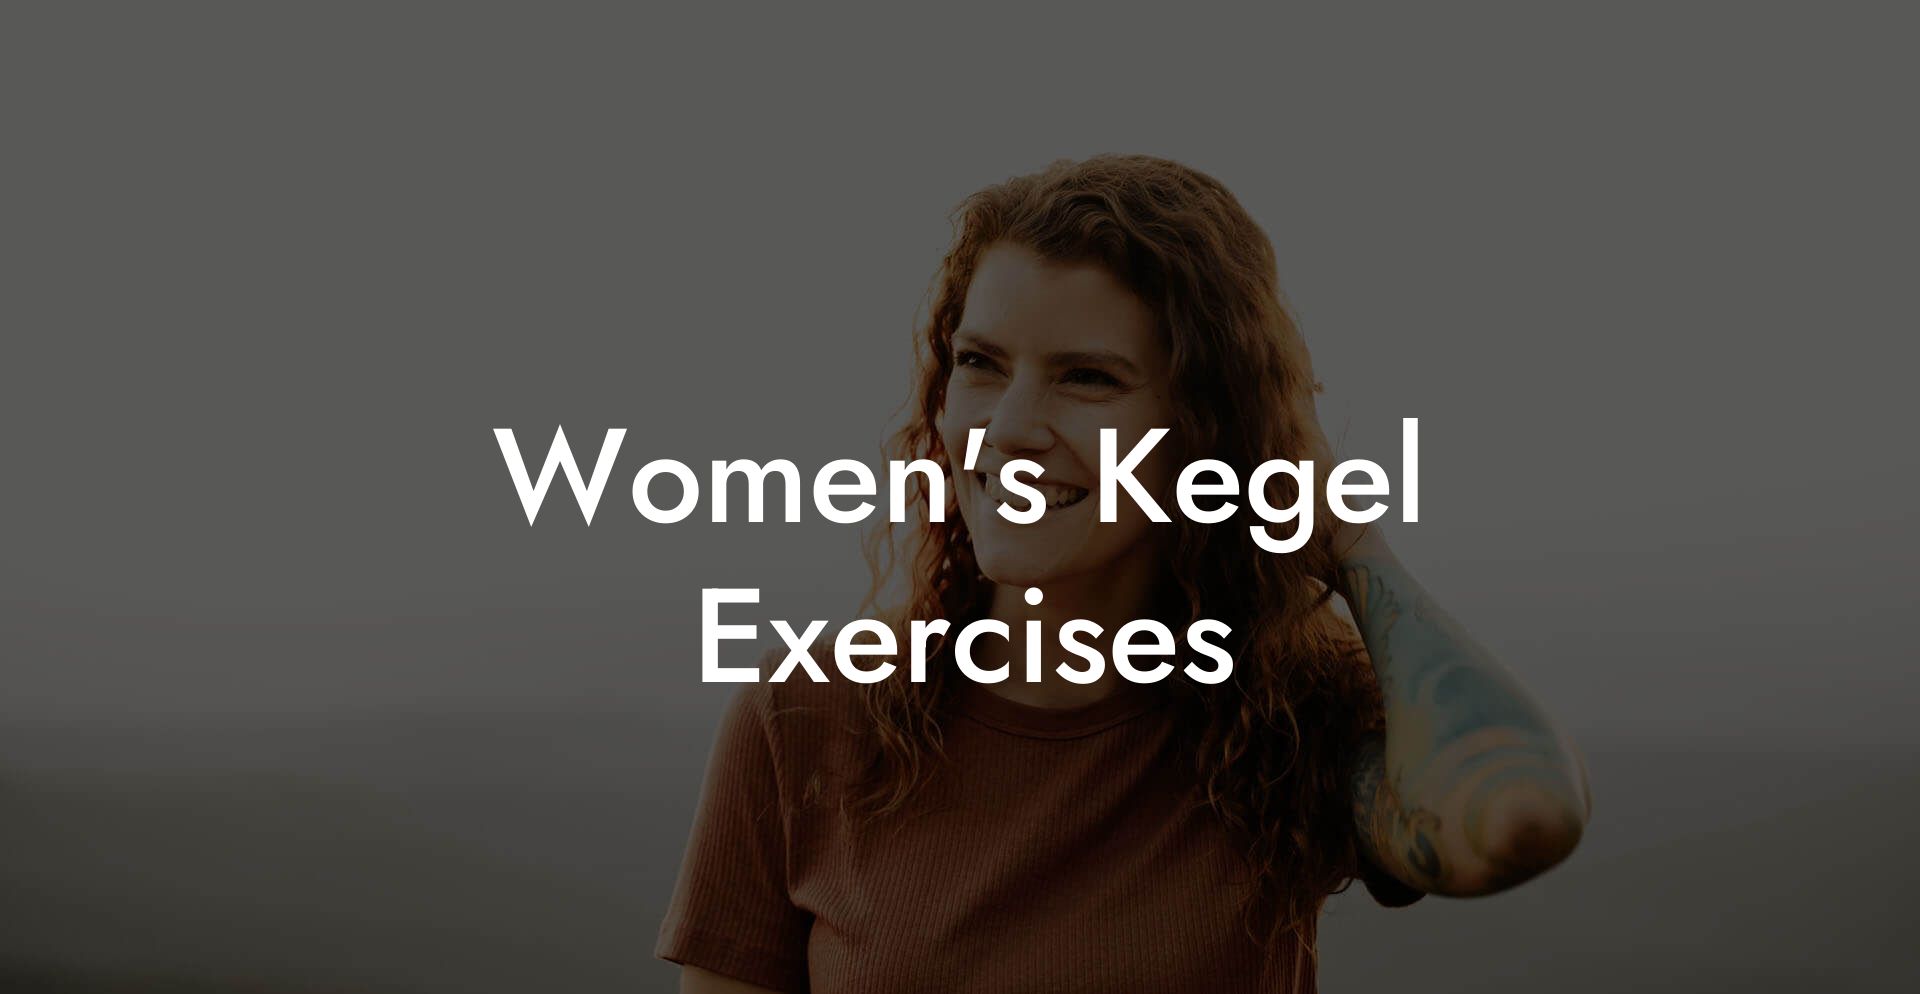 Women's Kegel Exercises